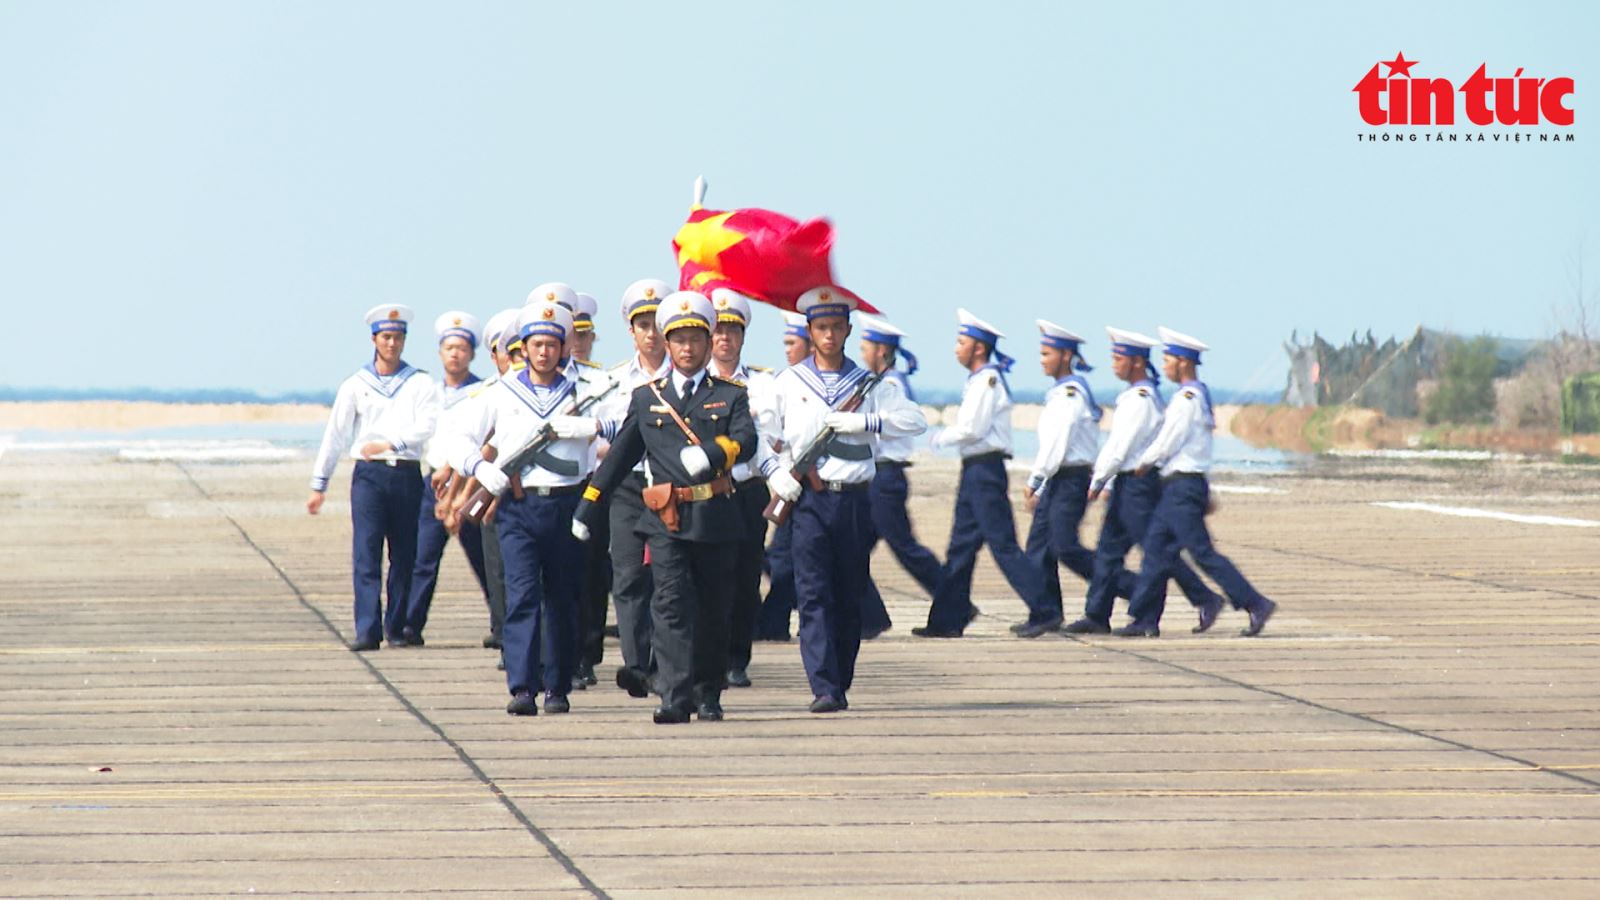 Từng khối đội ngũ cán bộ, chiến sỹ và các lực lượng đóng quân trên đảo thực hiện nghi thức duyệt đội danh dự.